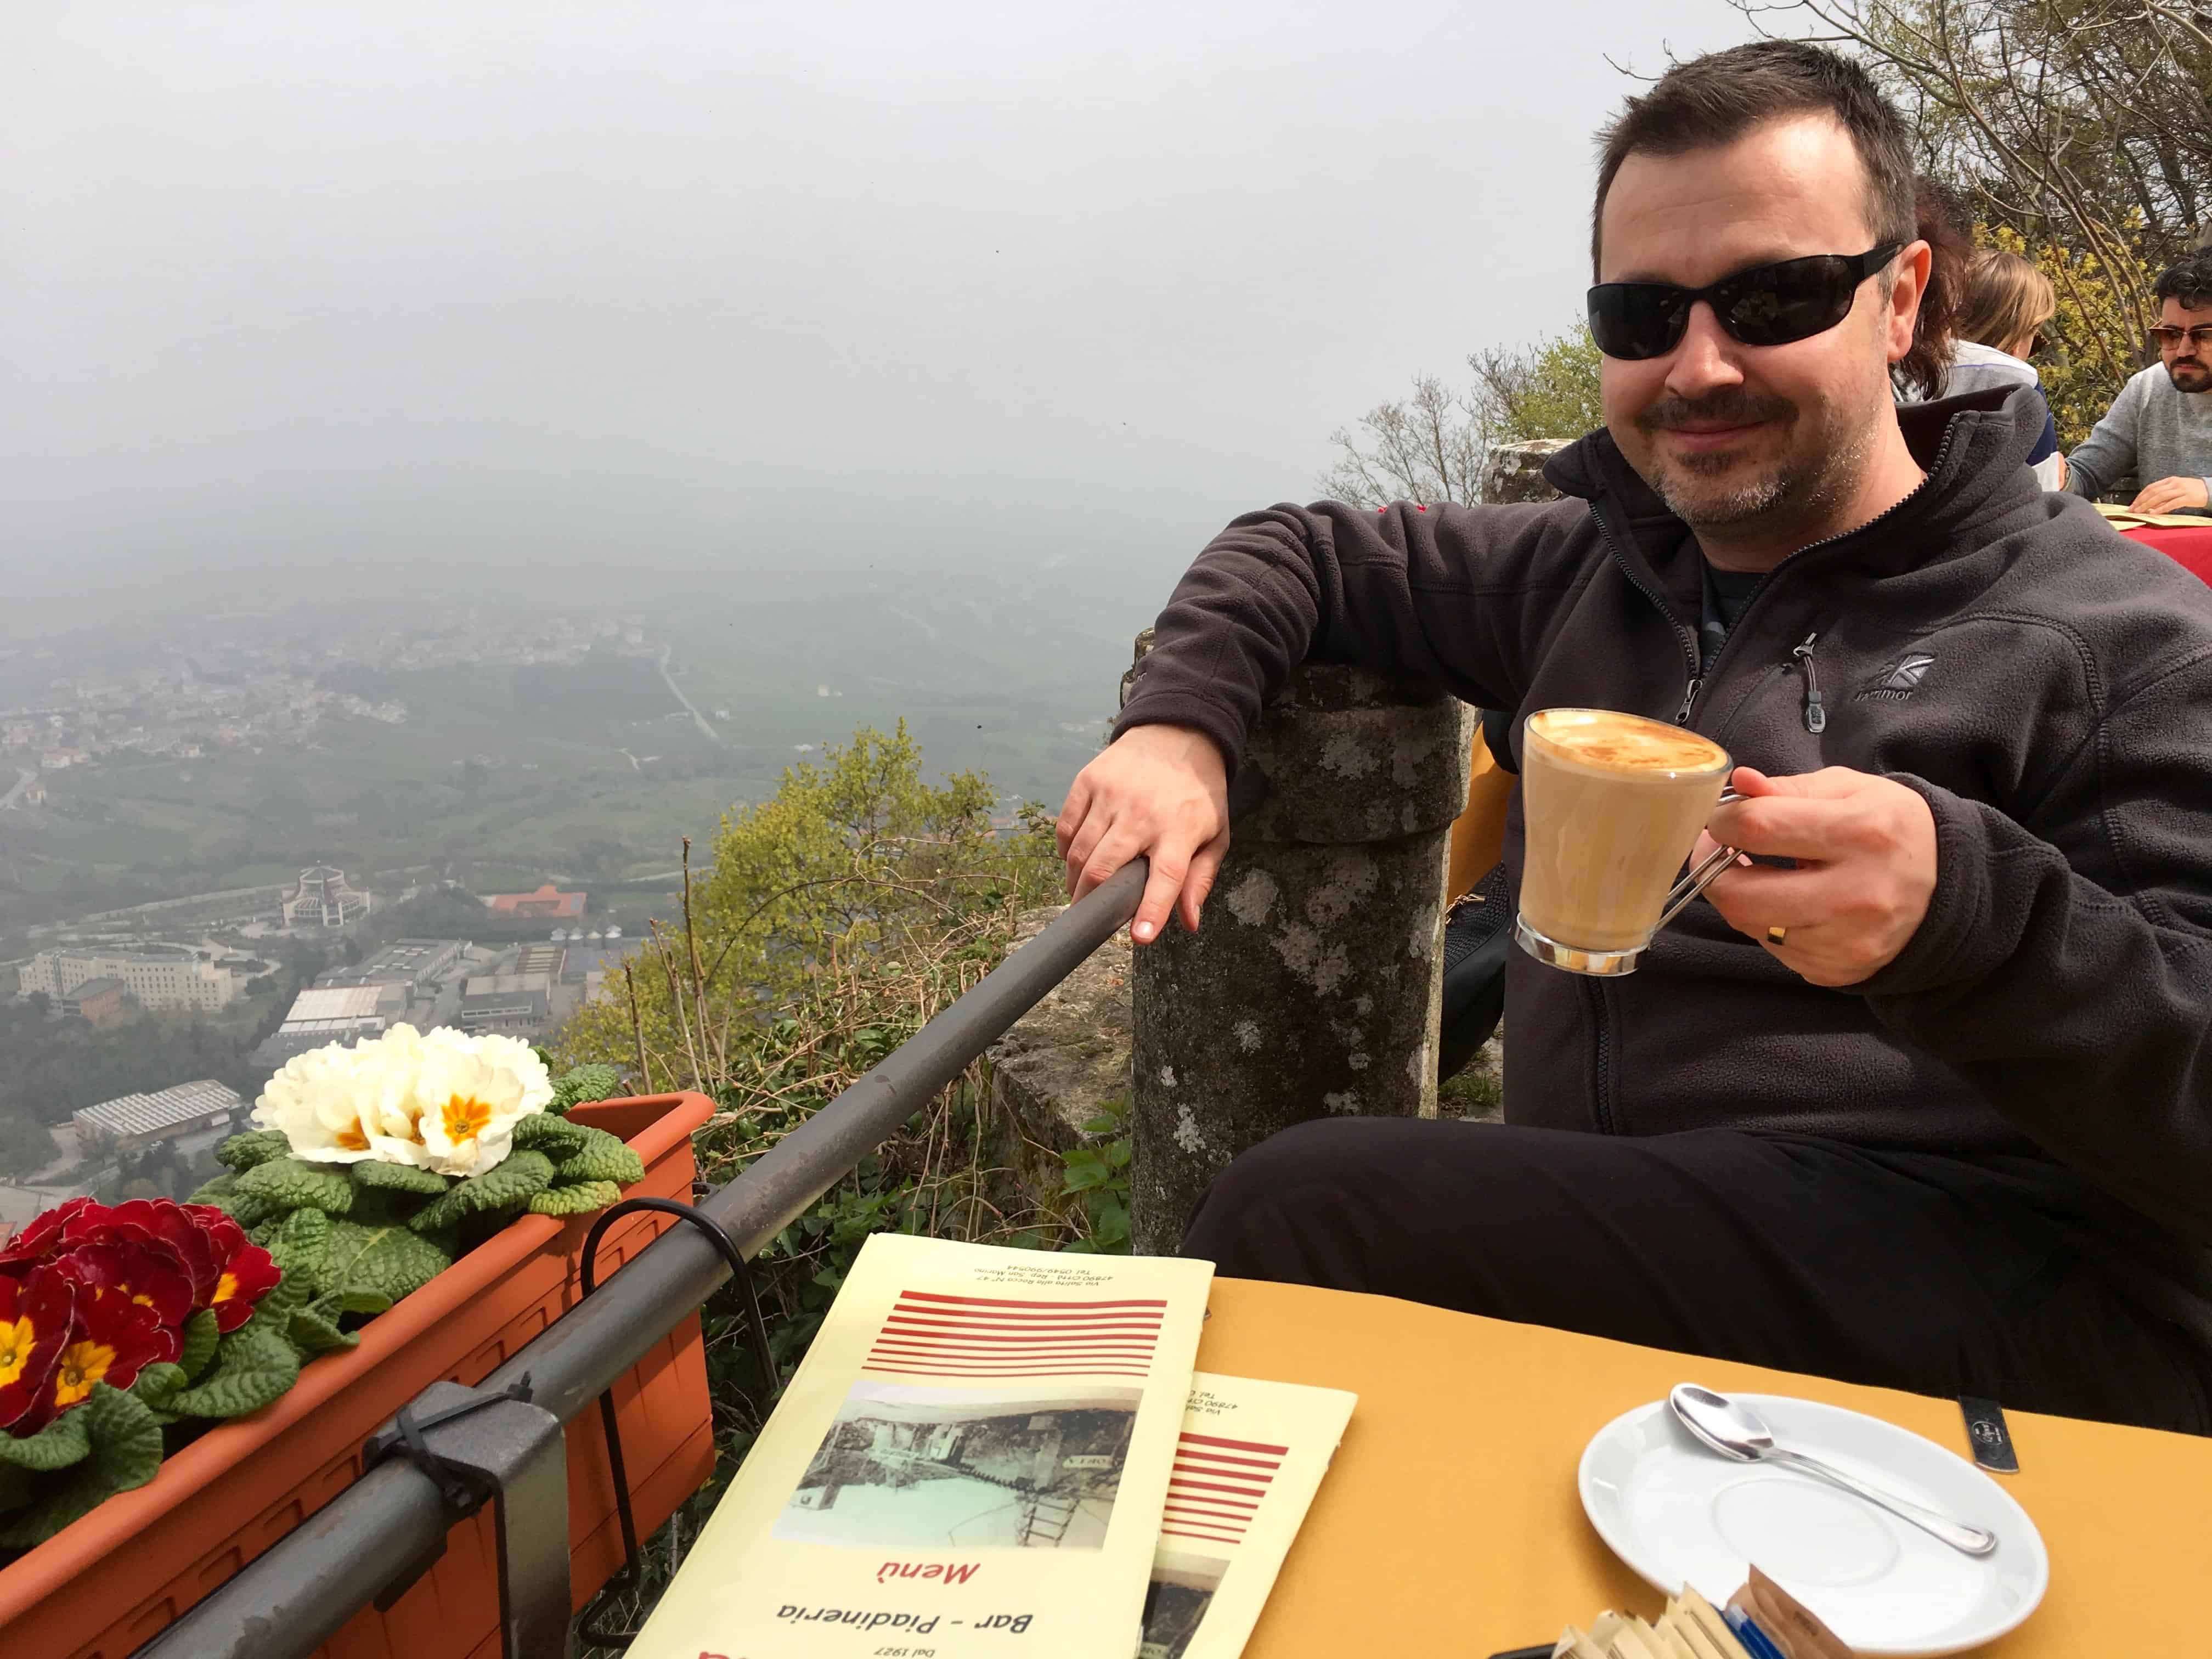 Coffee with views in the Citta di San Marino.